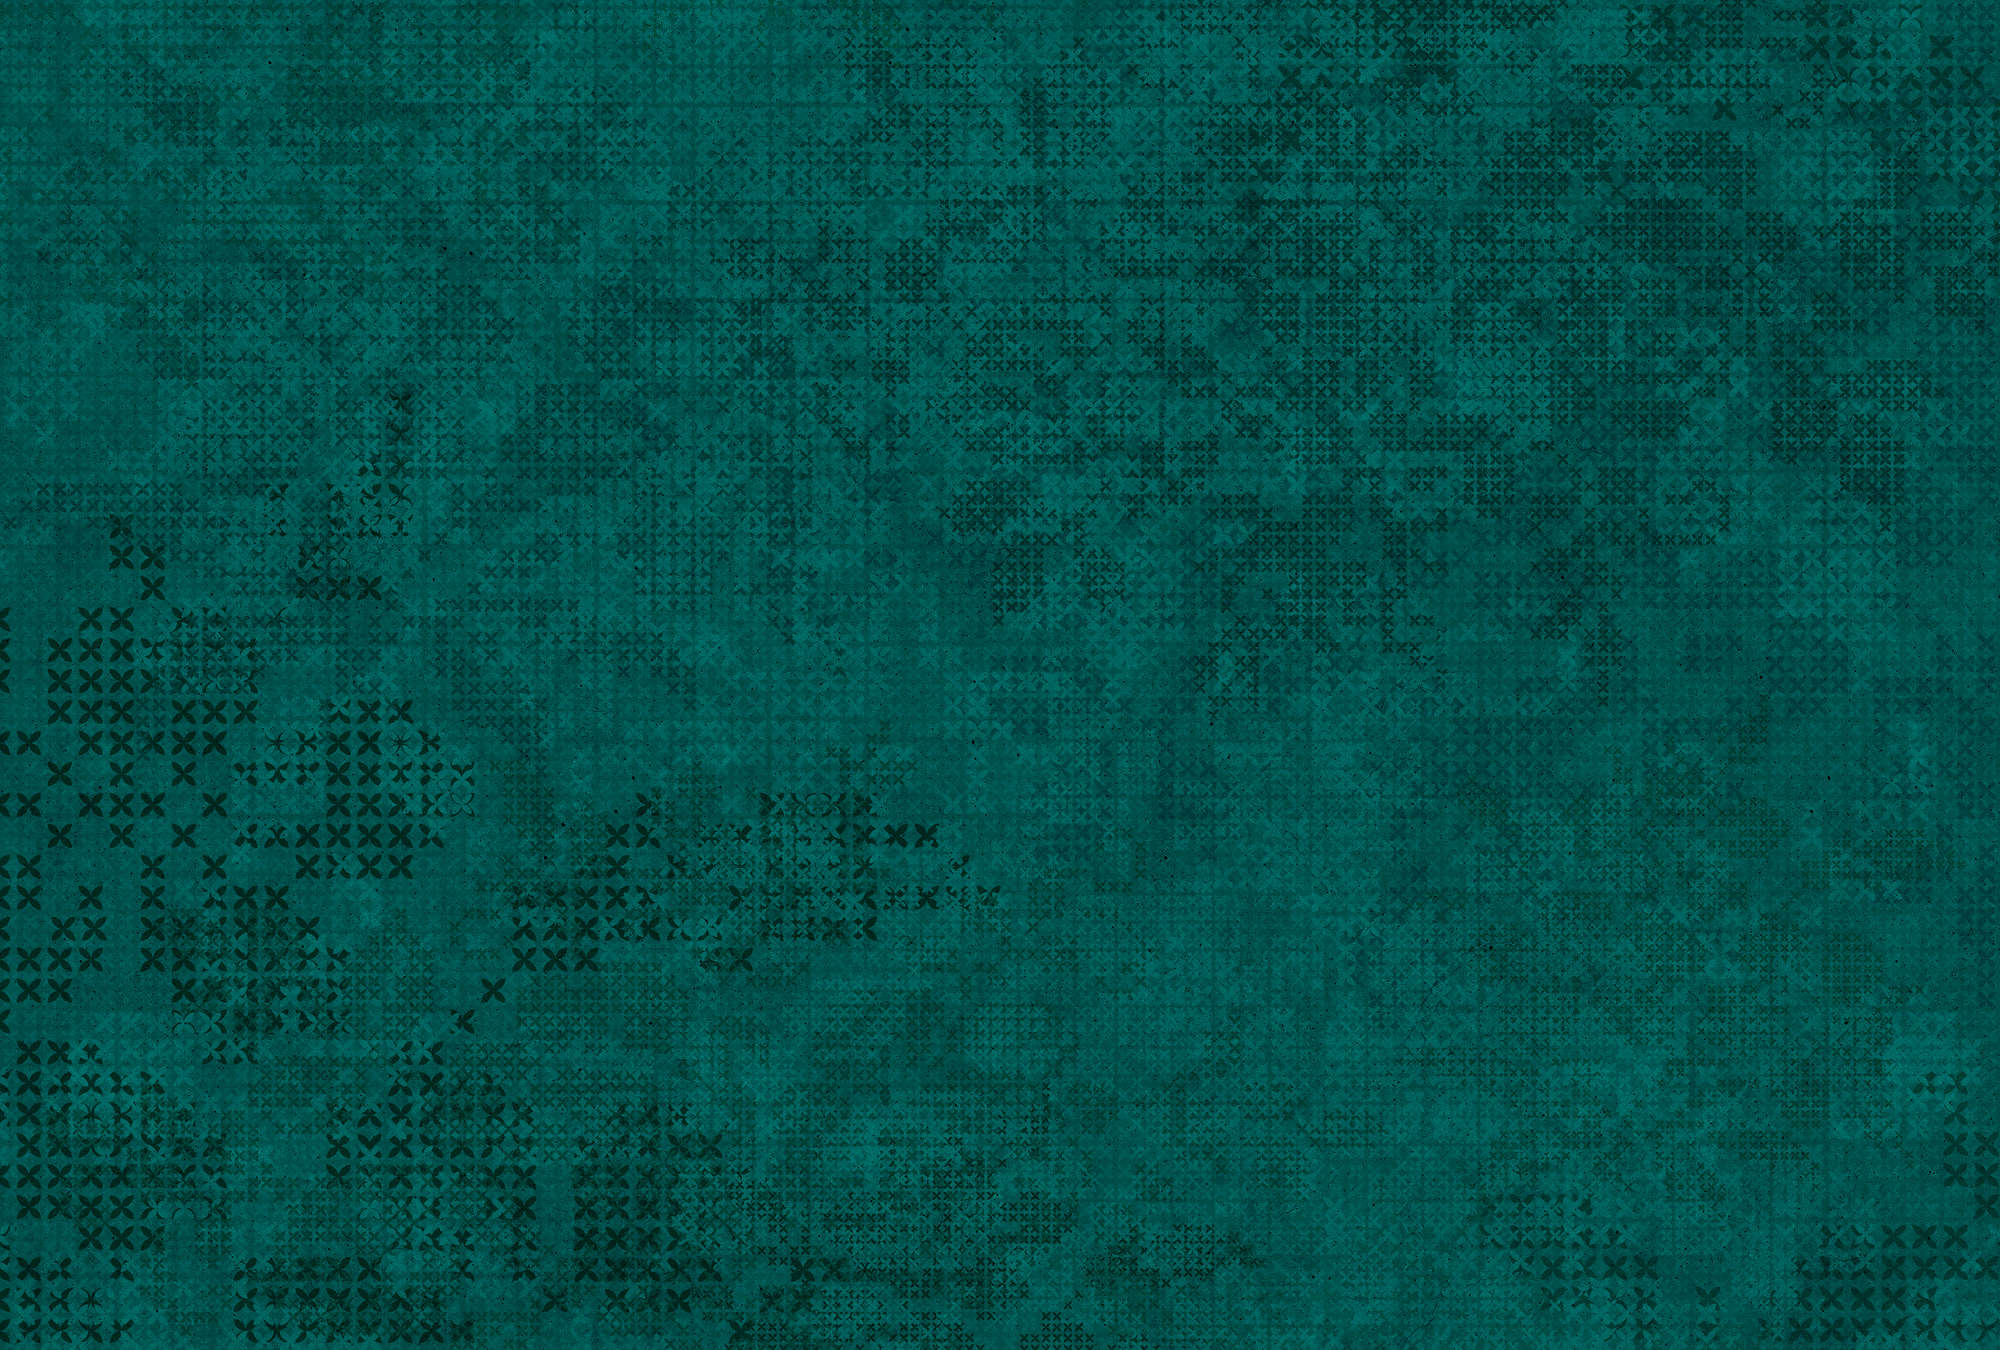             Photo wallpaper cross pattern in pixel style - green, black
        